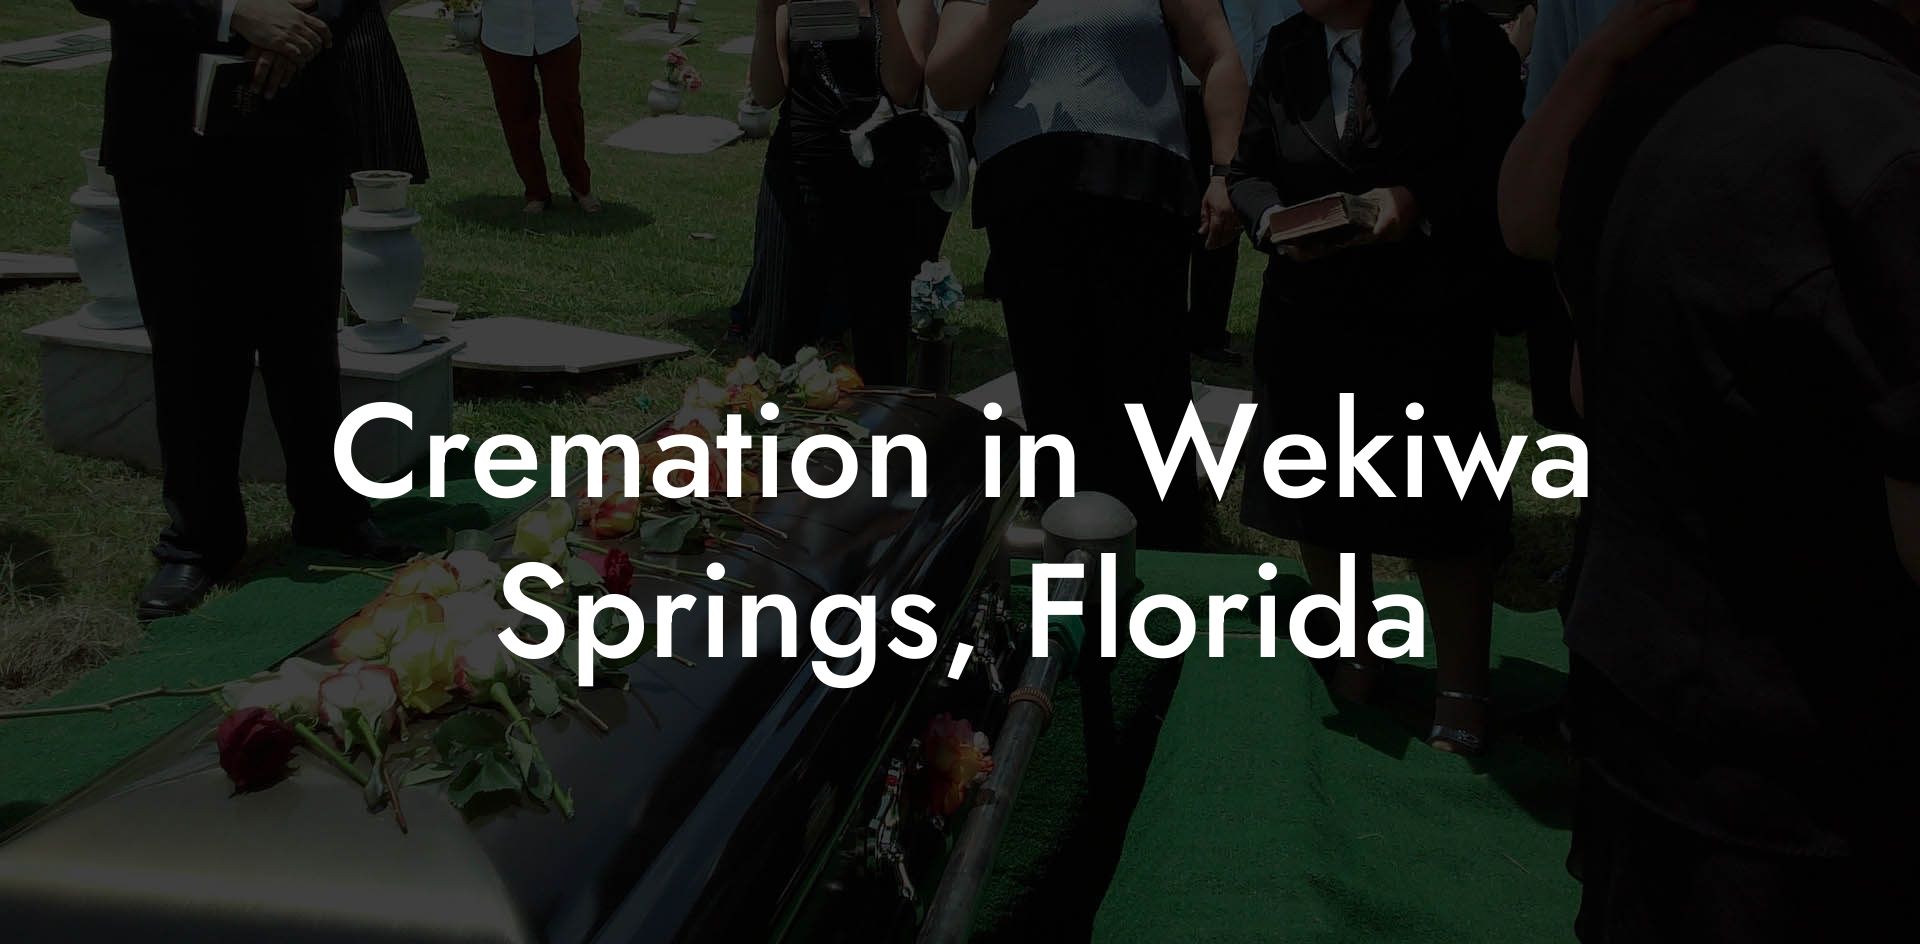 Cremation in Wekiwa Springs, Florida